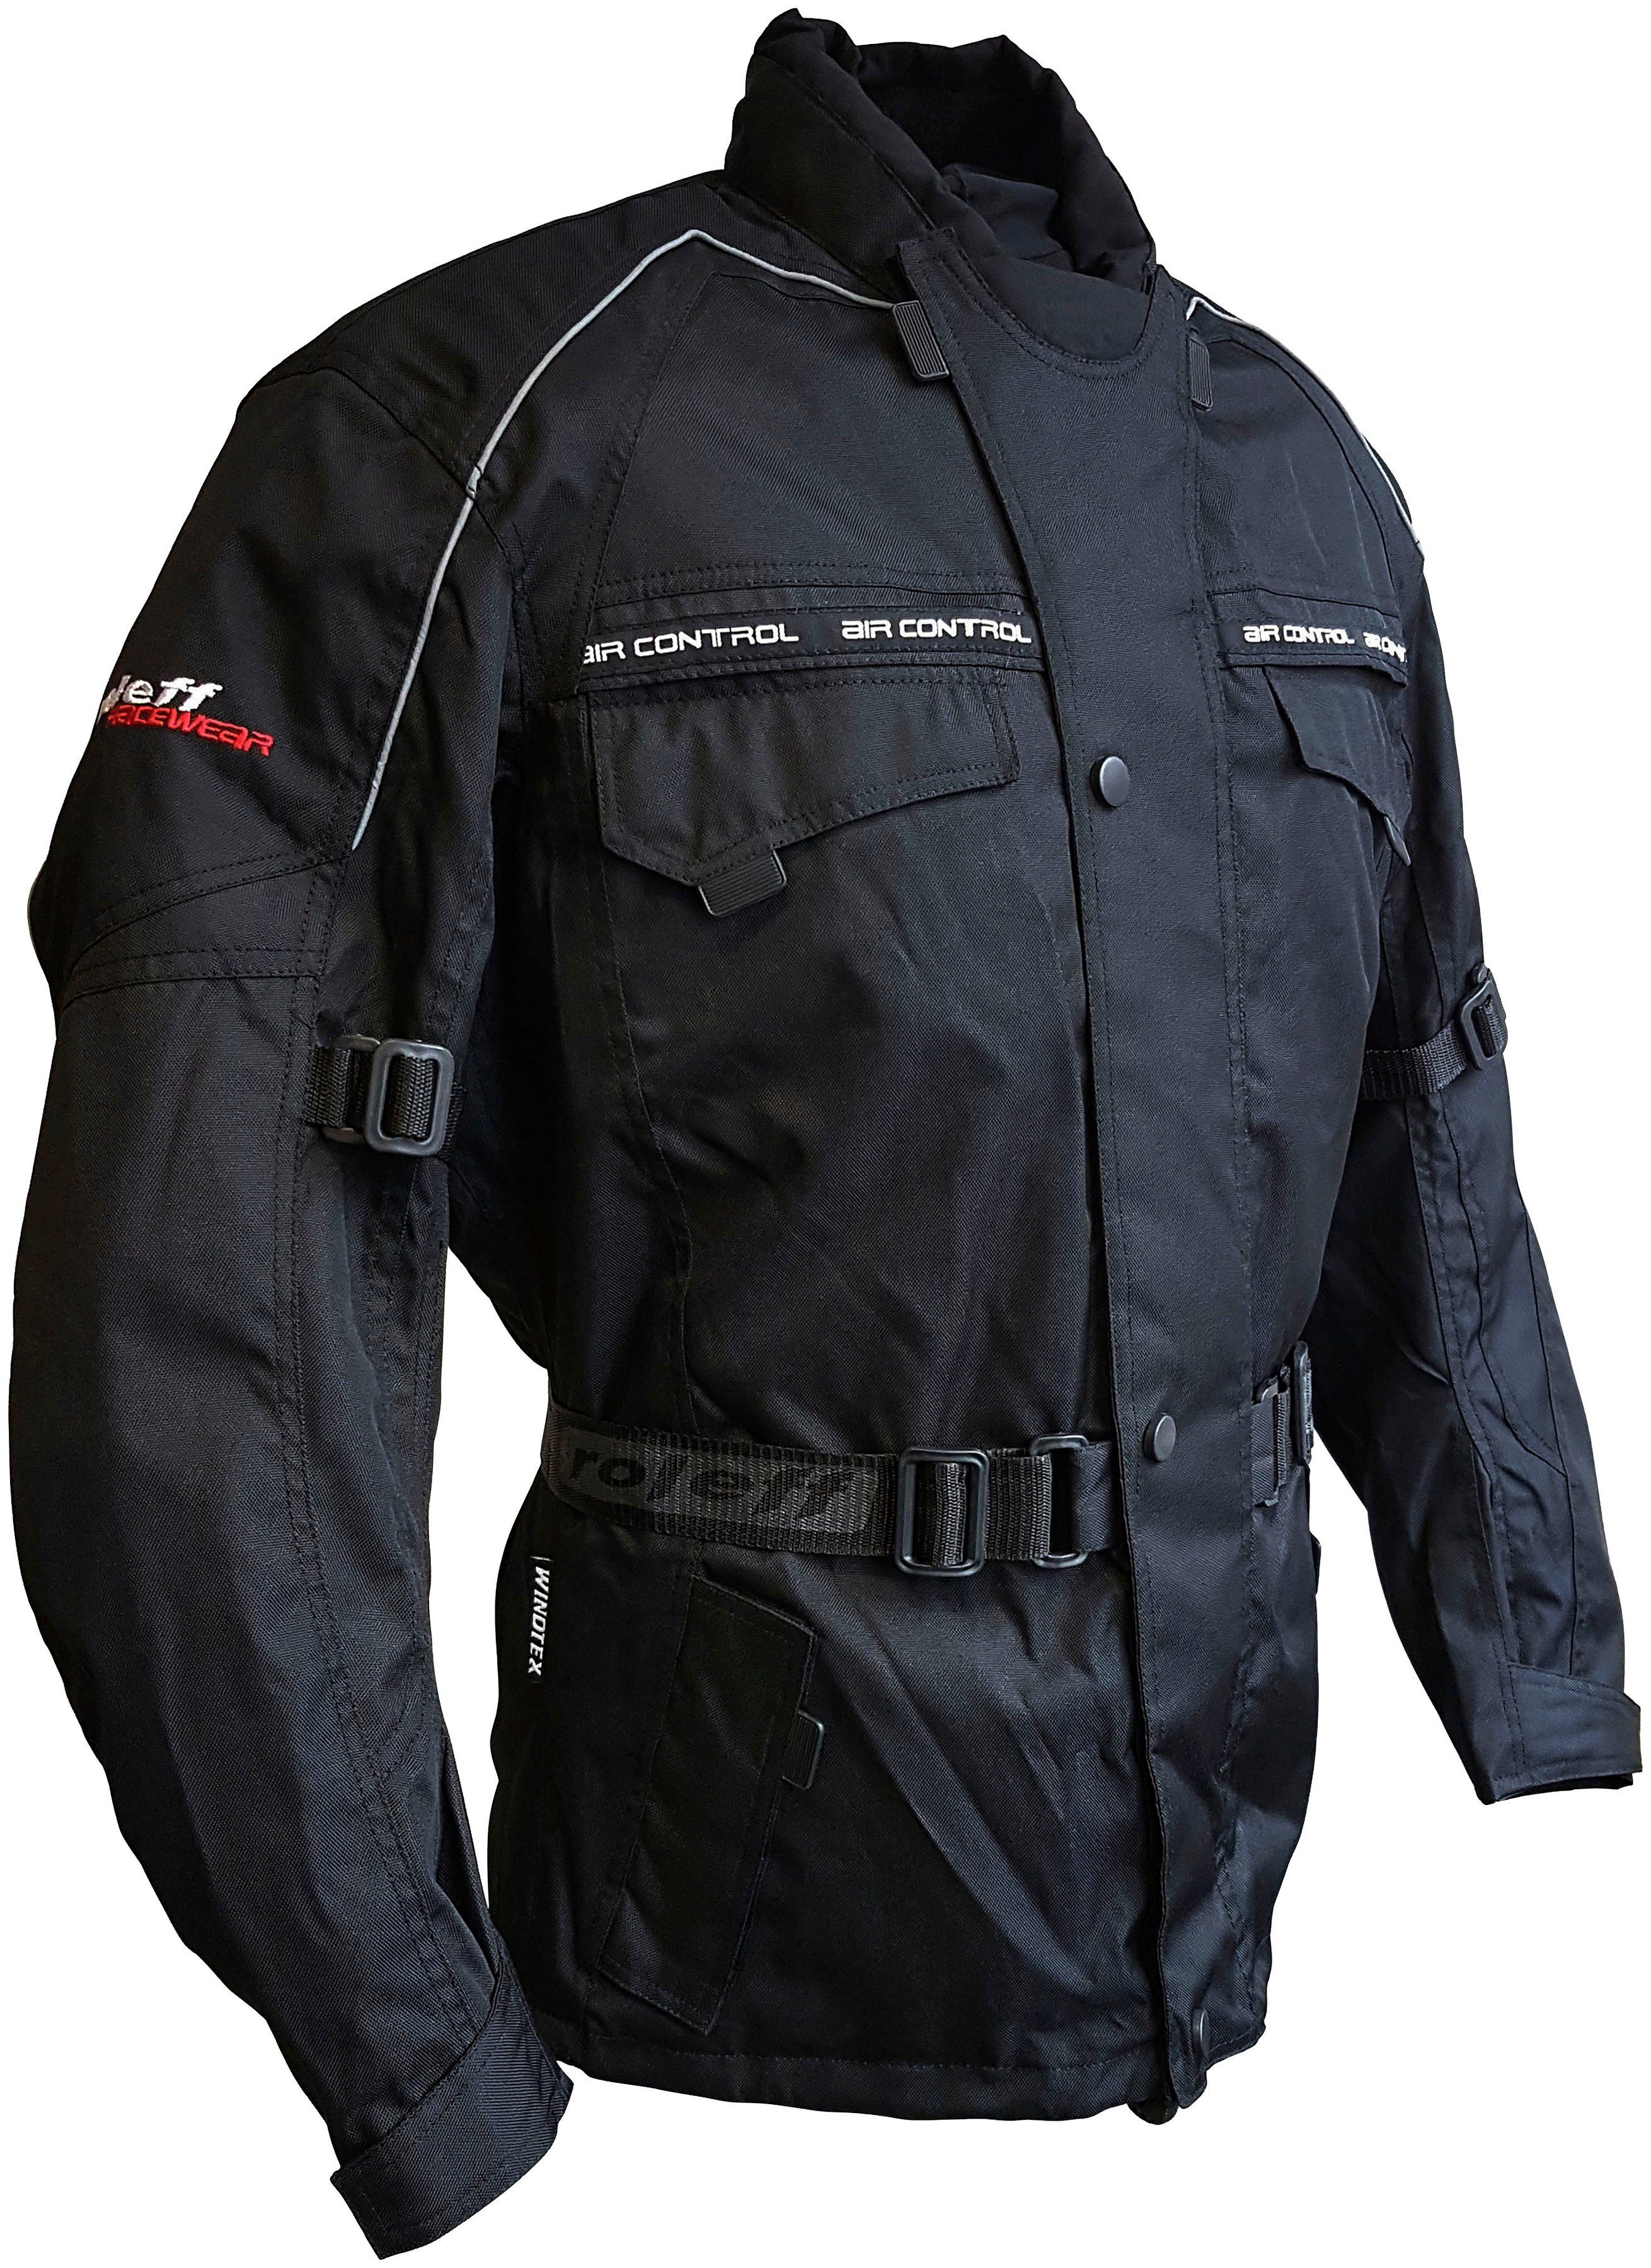 Motorradjacke mit Belüftungslöcher Taschen, roleff 3 Reno Protektoren, 4 schwarz